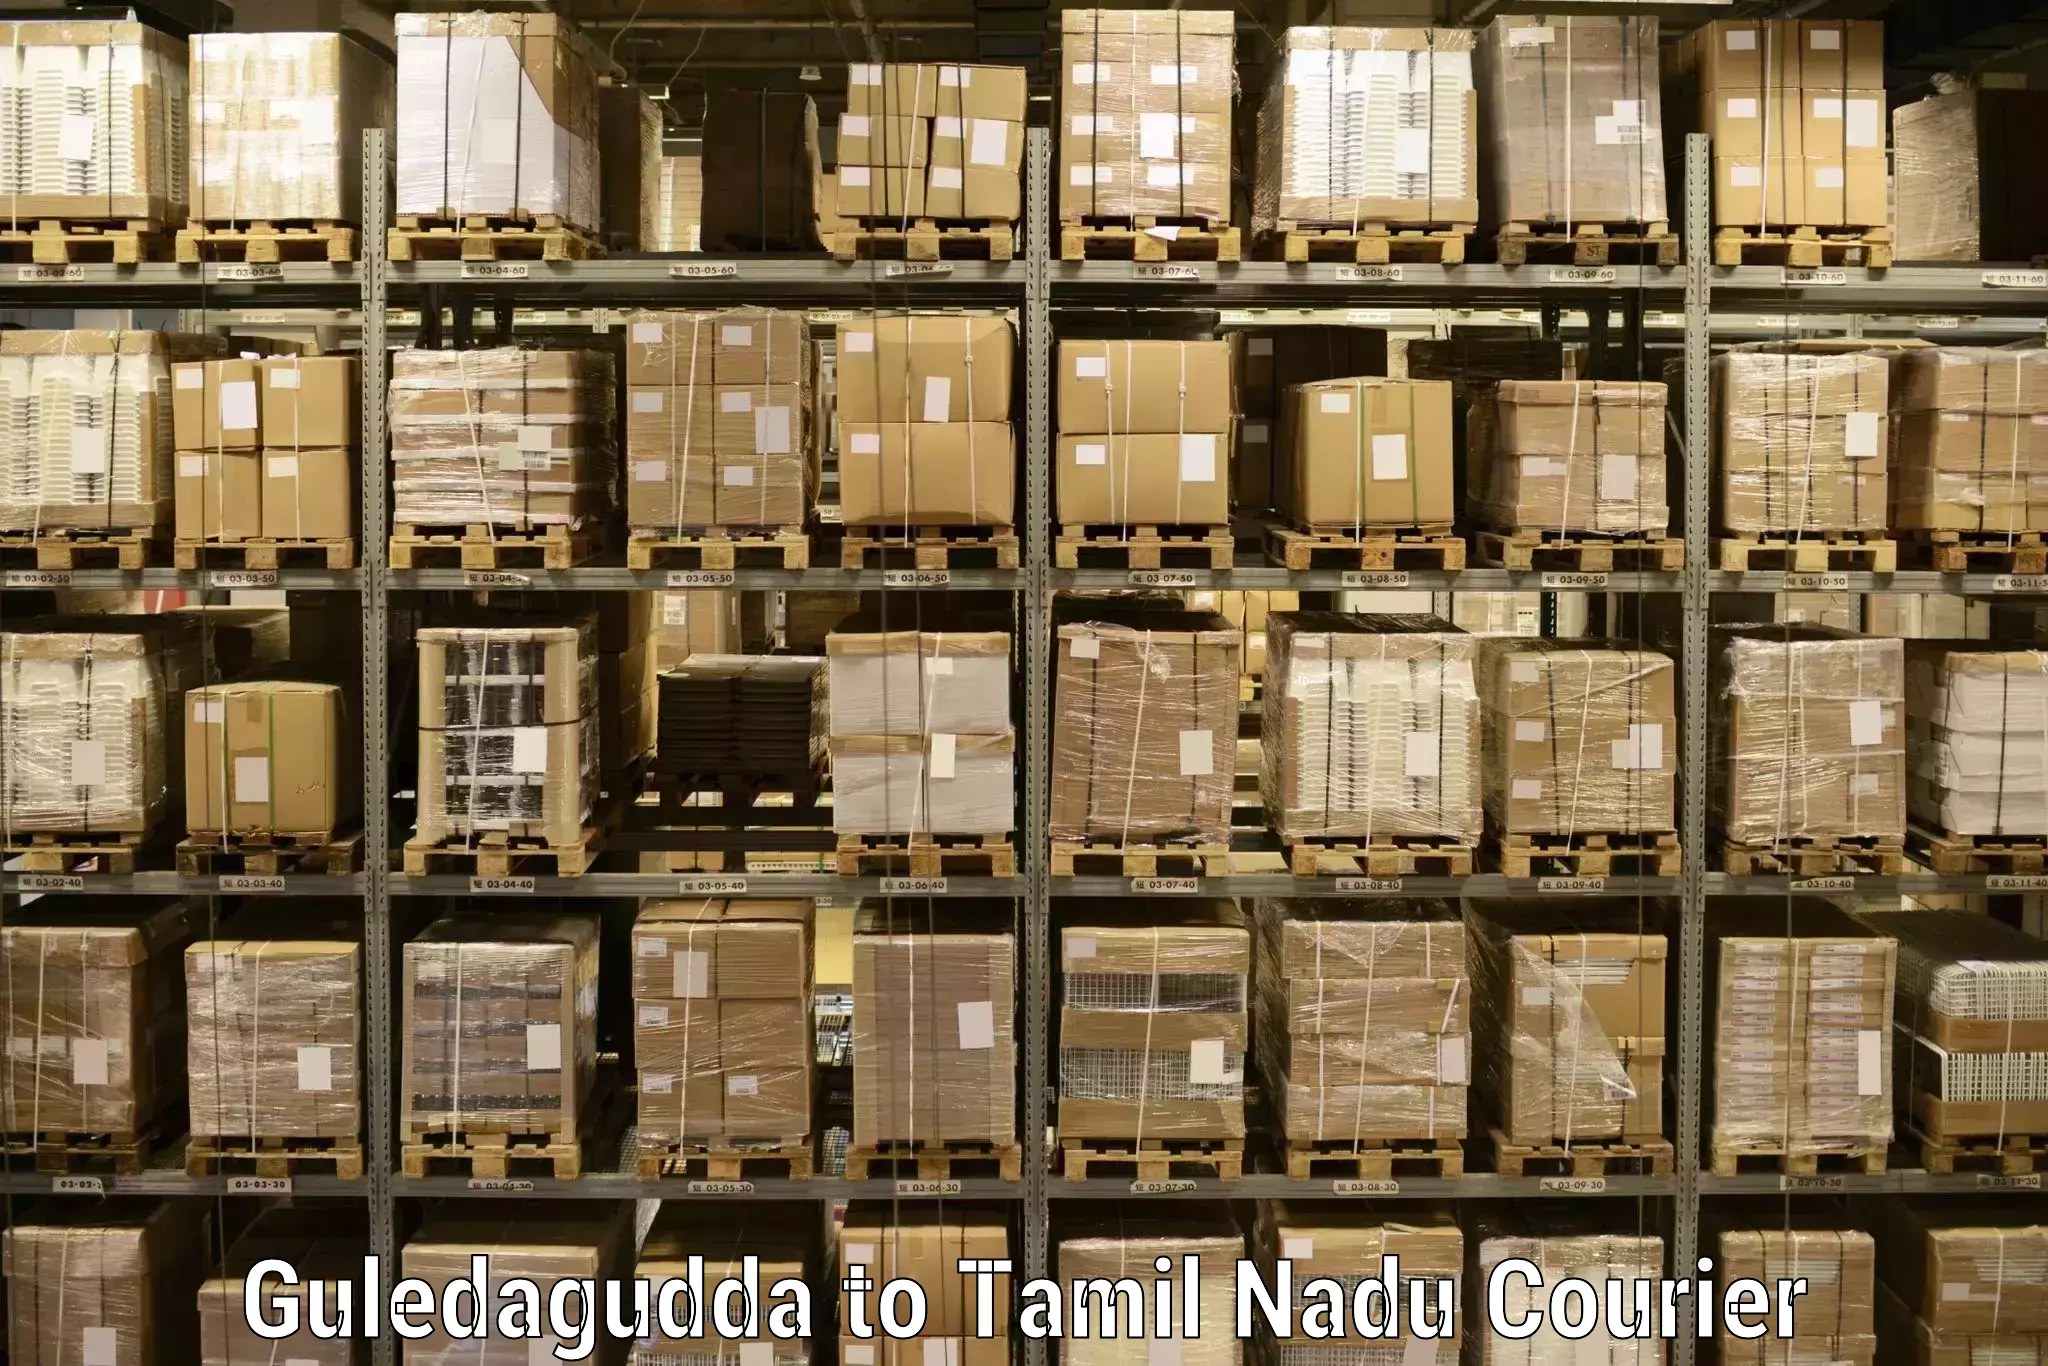 Customizable shipping options Guledagudda to Marakkanam